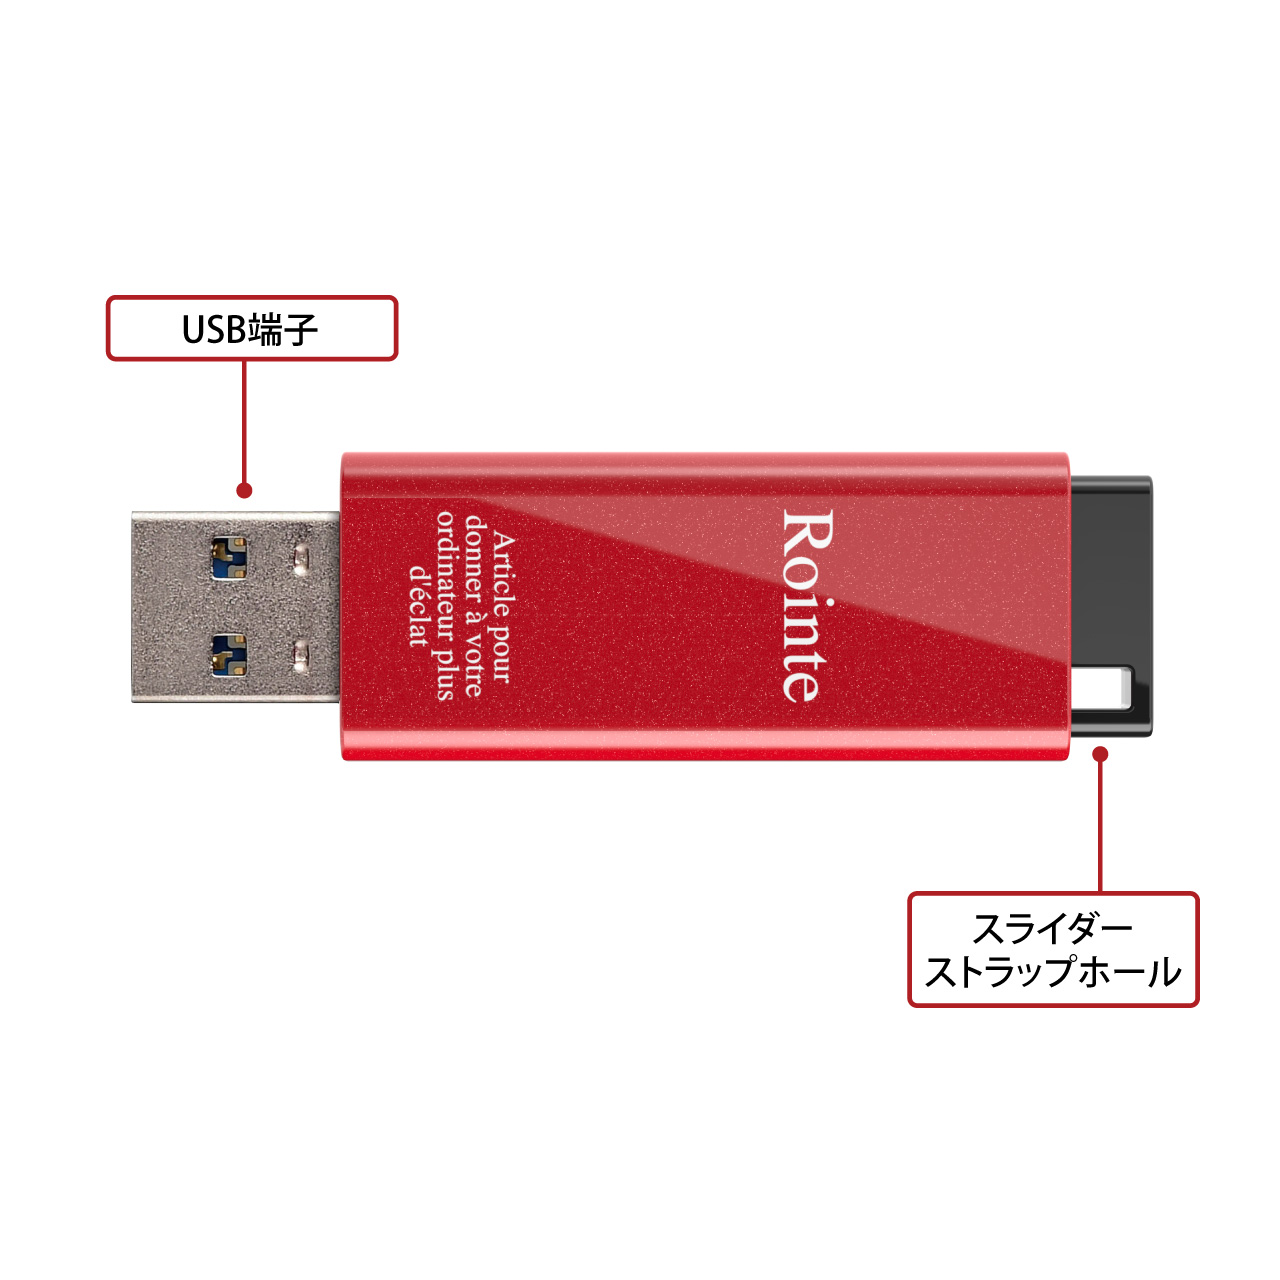 【になります】 【送料無料】(まとめ) バッファロー USB3.0対応 USBメモリー スタンダードモデル 16GB ブラック RUF3